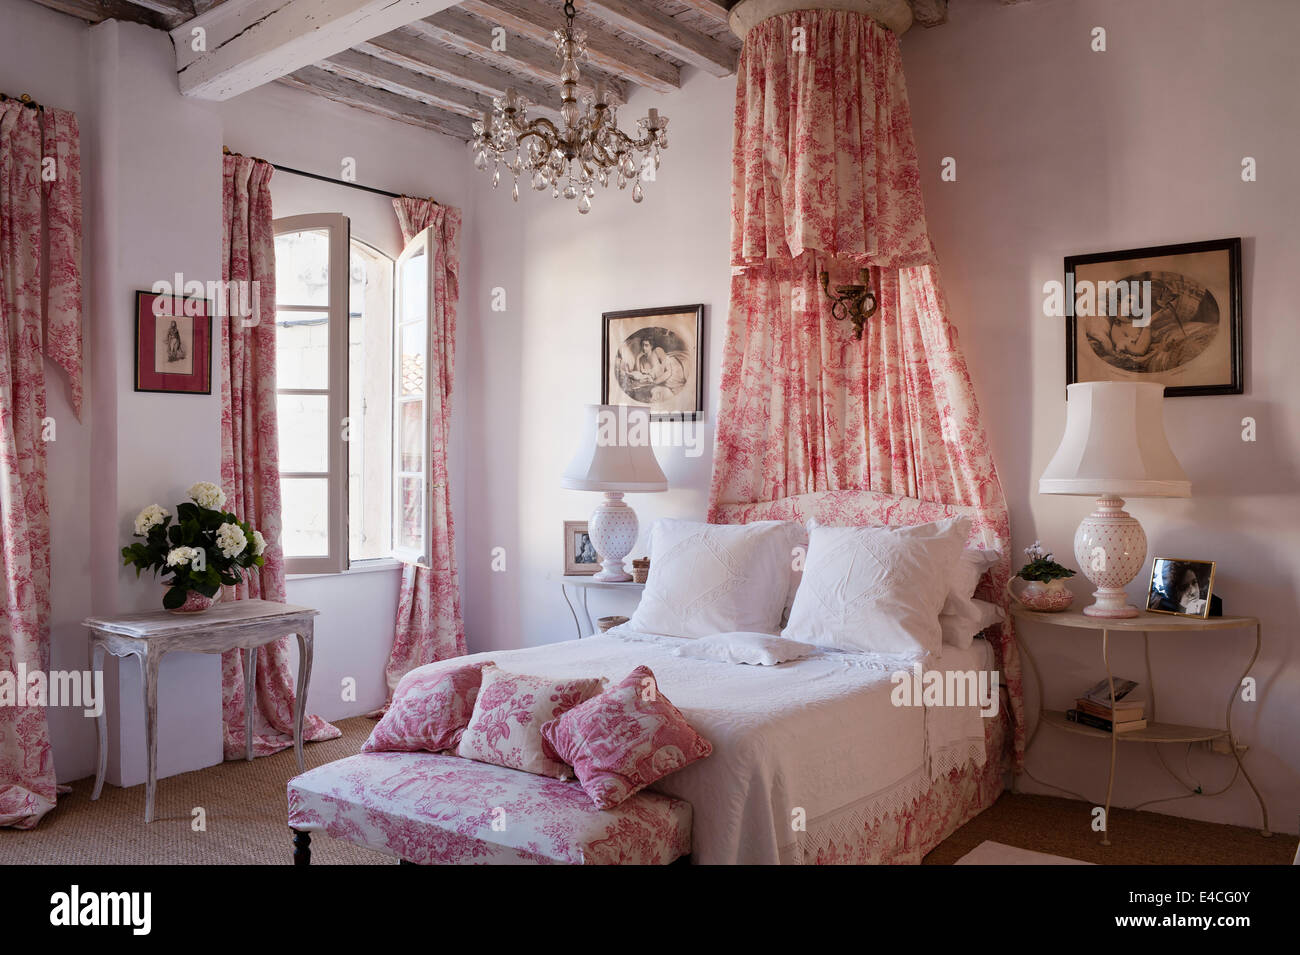 Rosa und weiße Toile De Jouy Stoff auf Kissen, Vorhang und Bett Coronet Baldachin im Schlafzimmer mit Holzbalken und Nachttisch Stockfoto